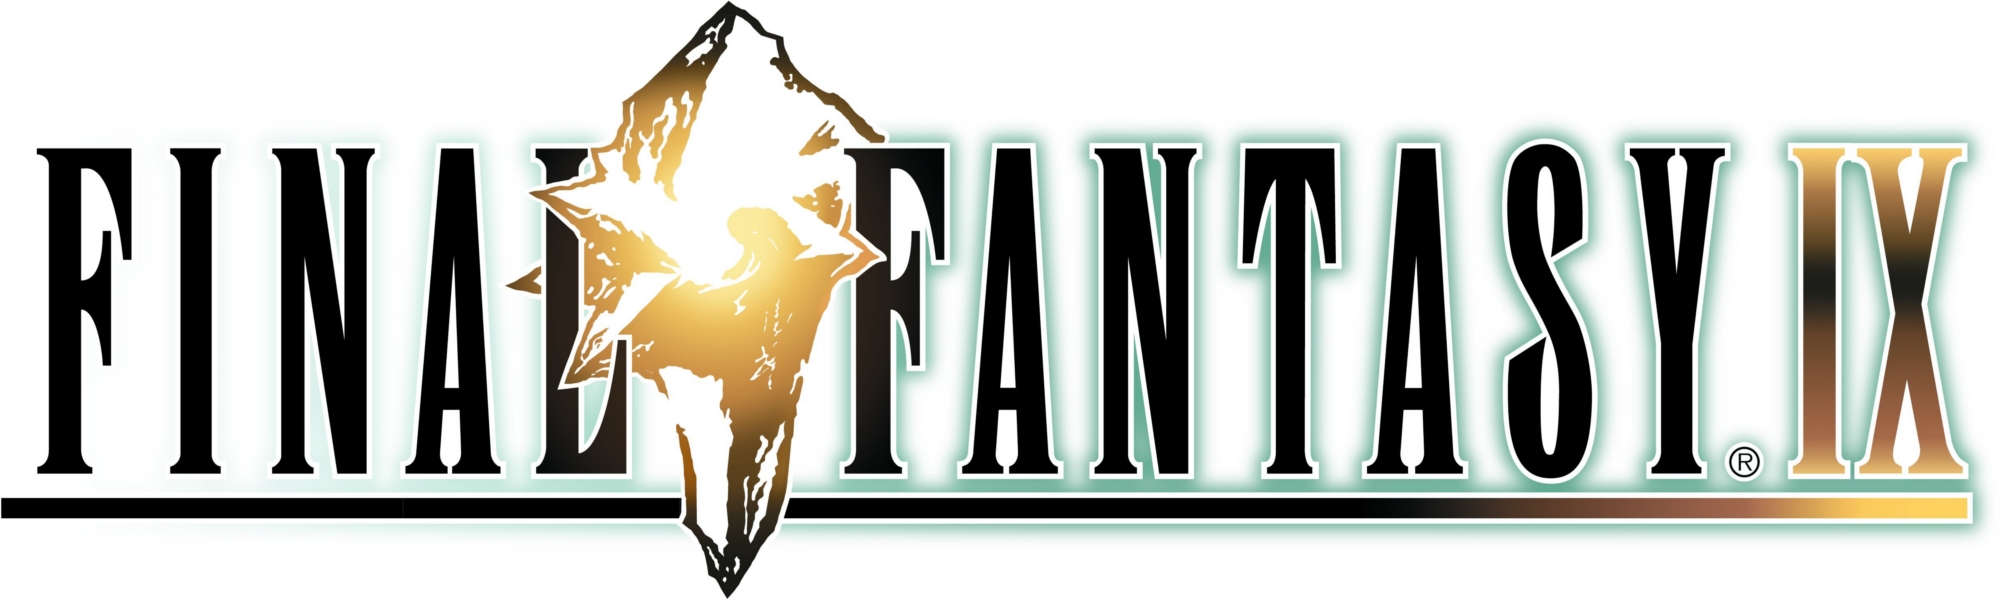 Final Fantasy IX #5